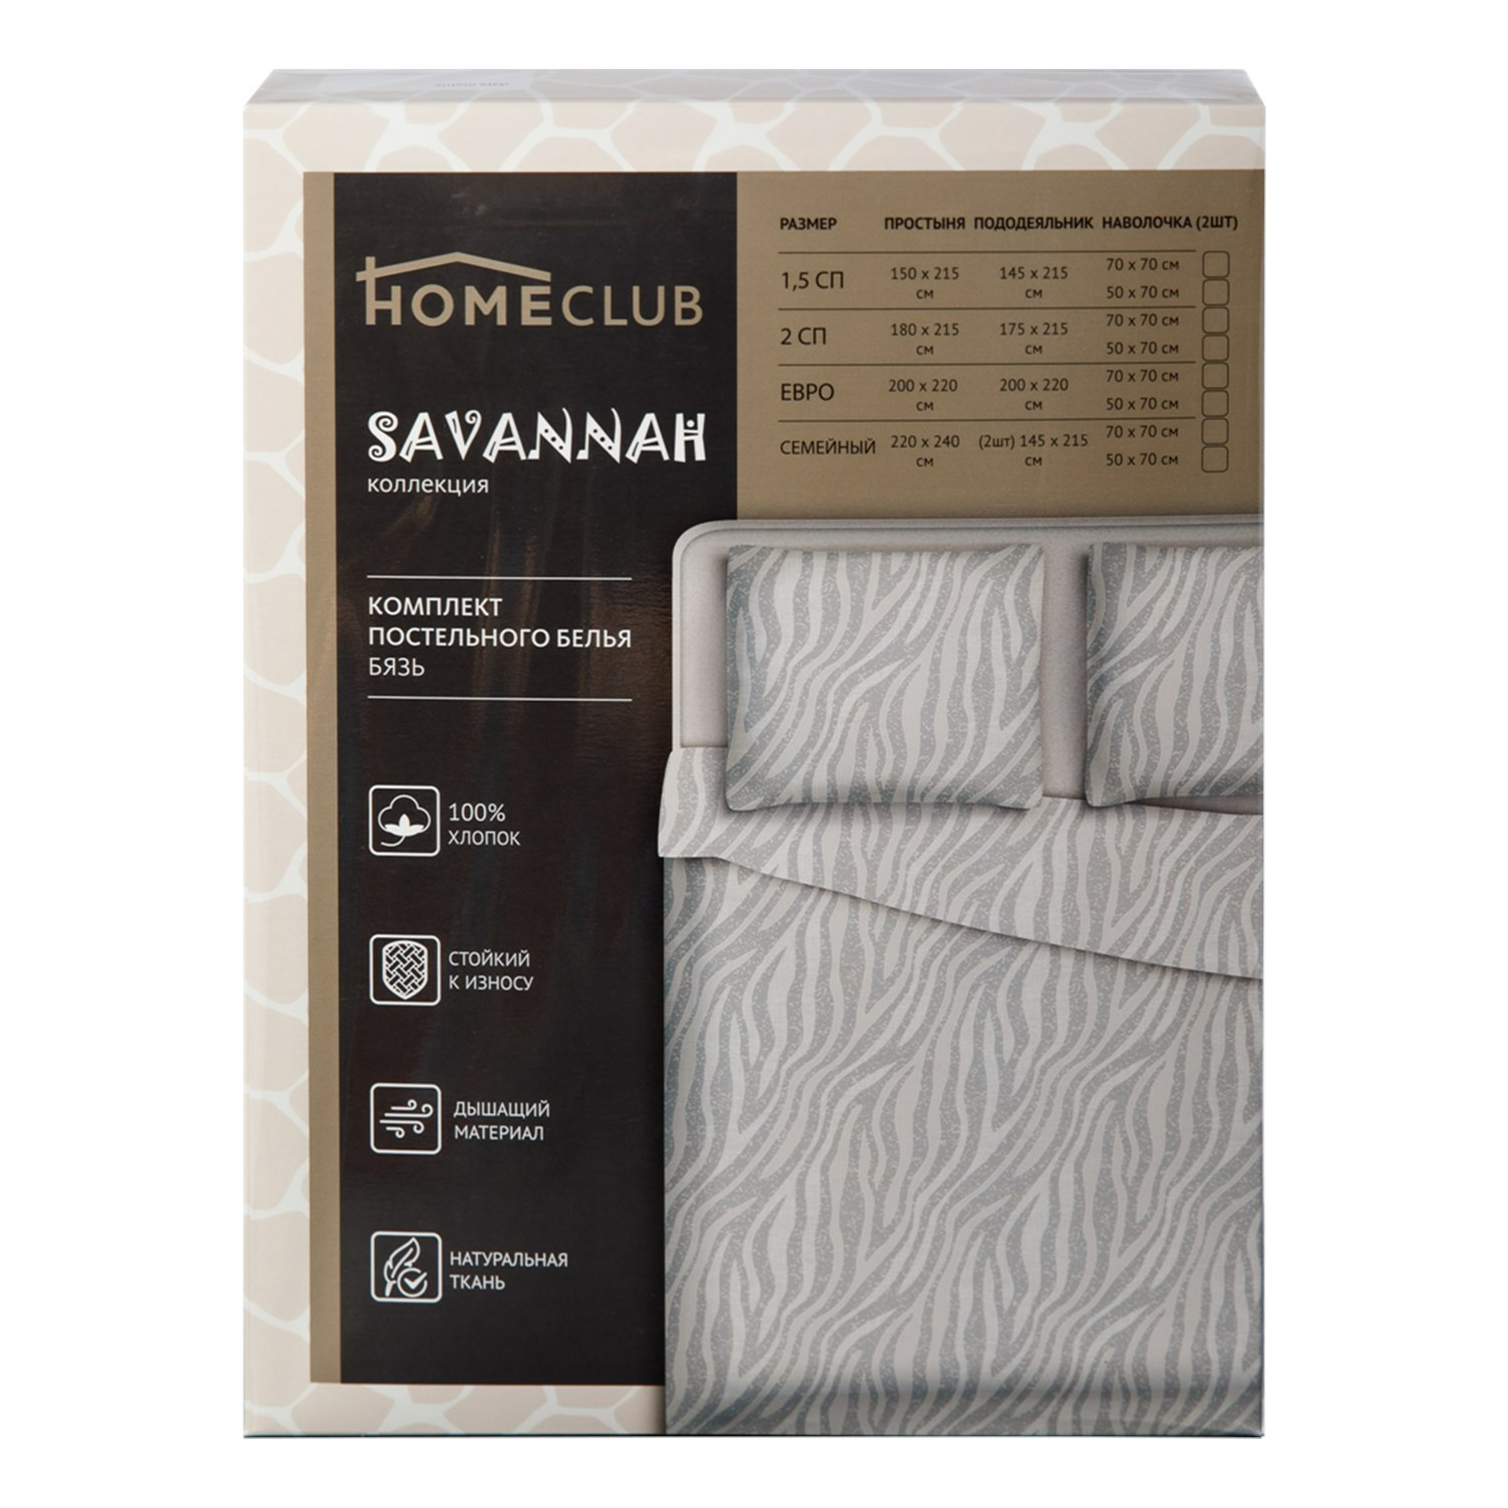 Комплект постельного белья Homeclub Savannah двуспальный бязь 50x70 см в ассортименте